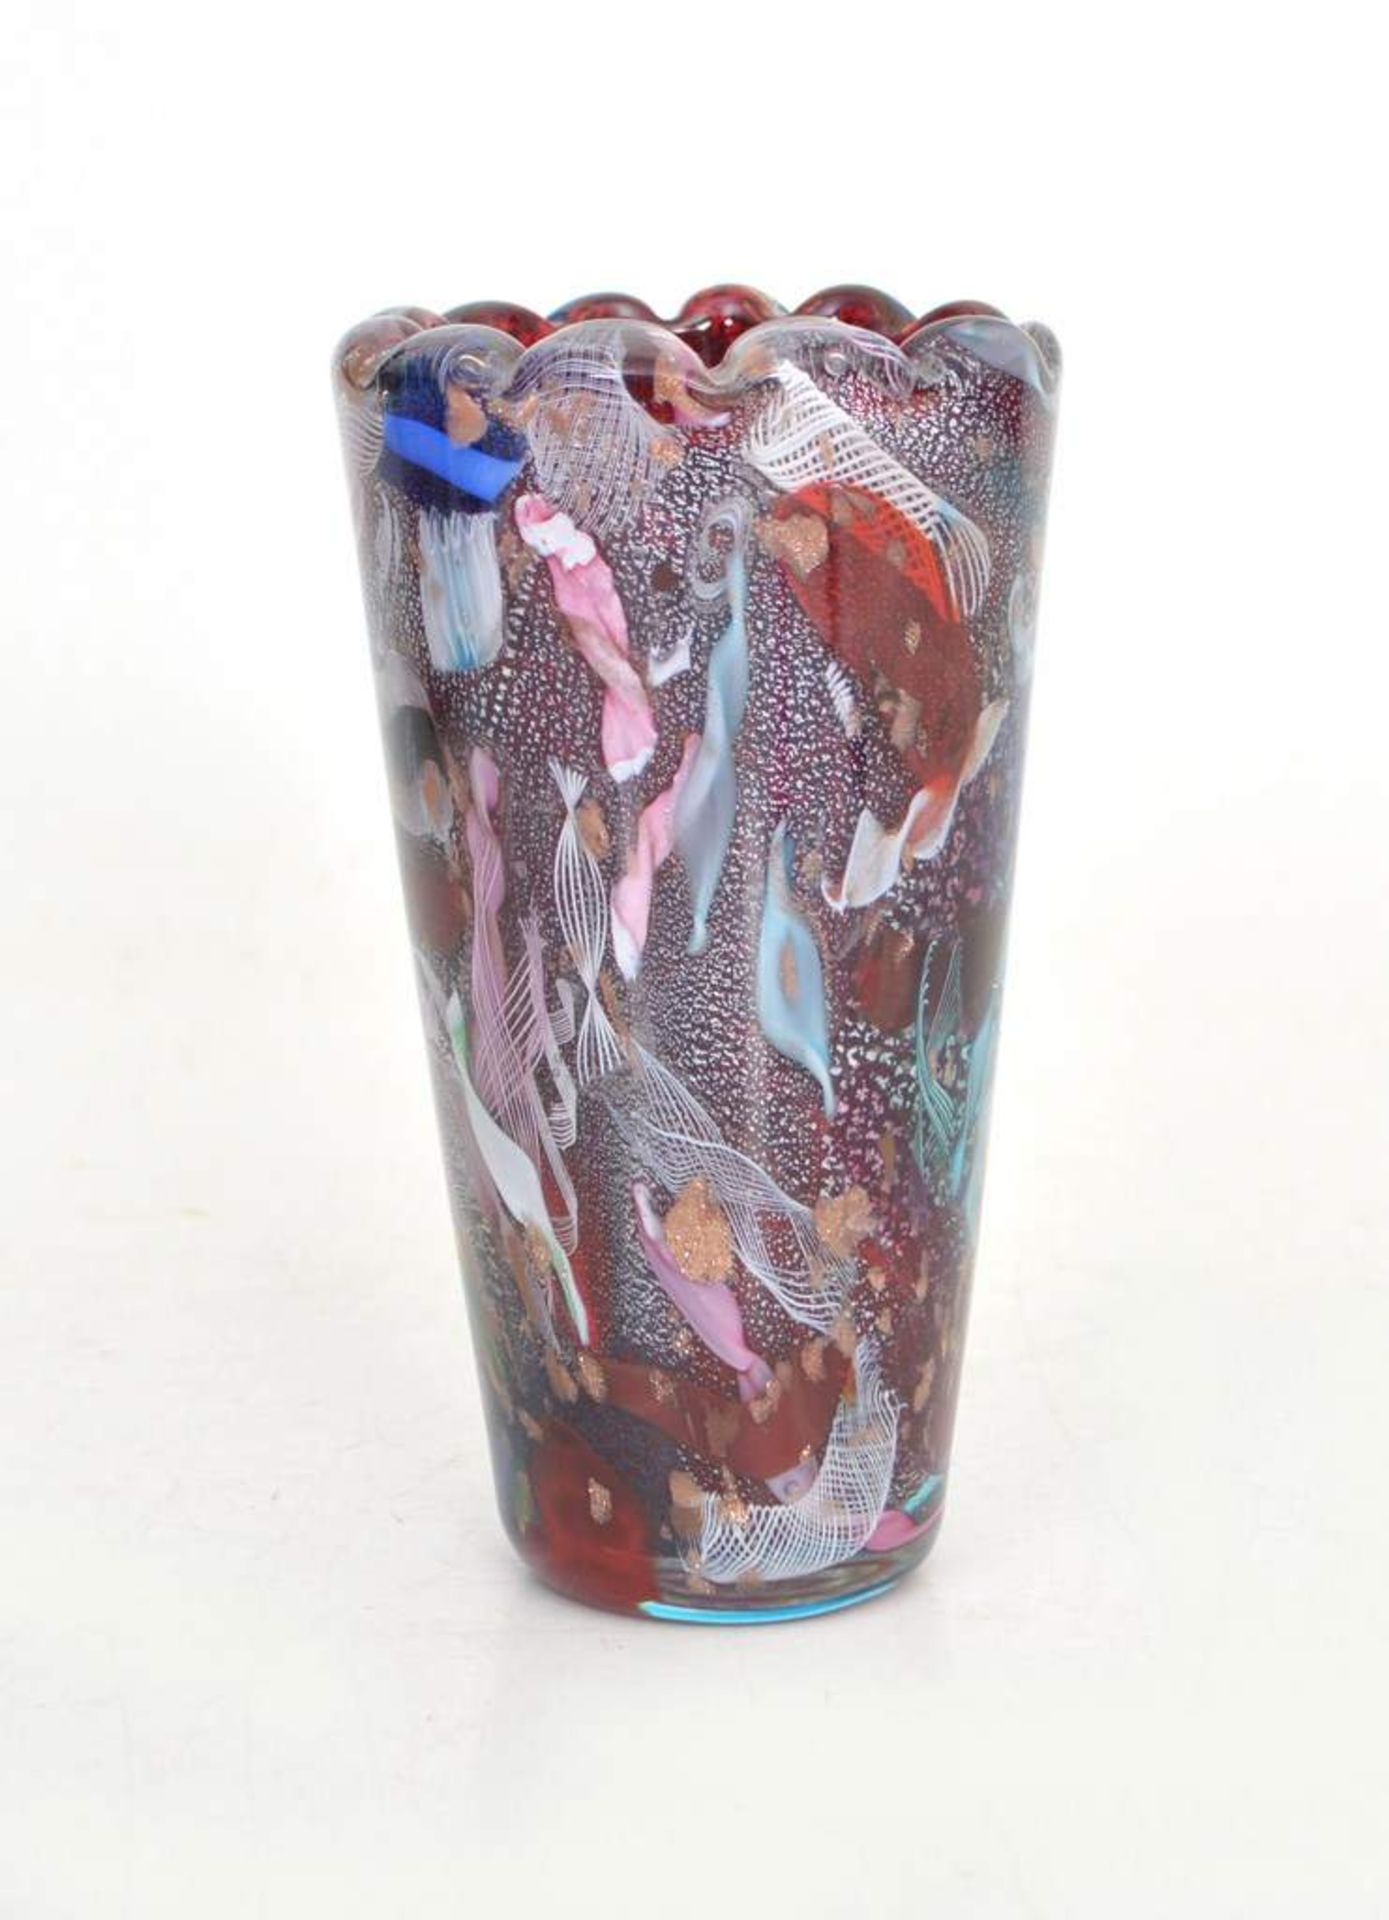 Vasefarbl. Glas, mit bunter Farbeinschmelzung, leicht gewellter Rand, H 15 cm, FM